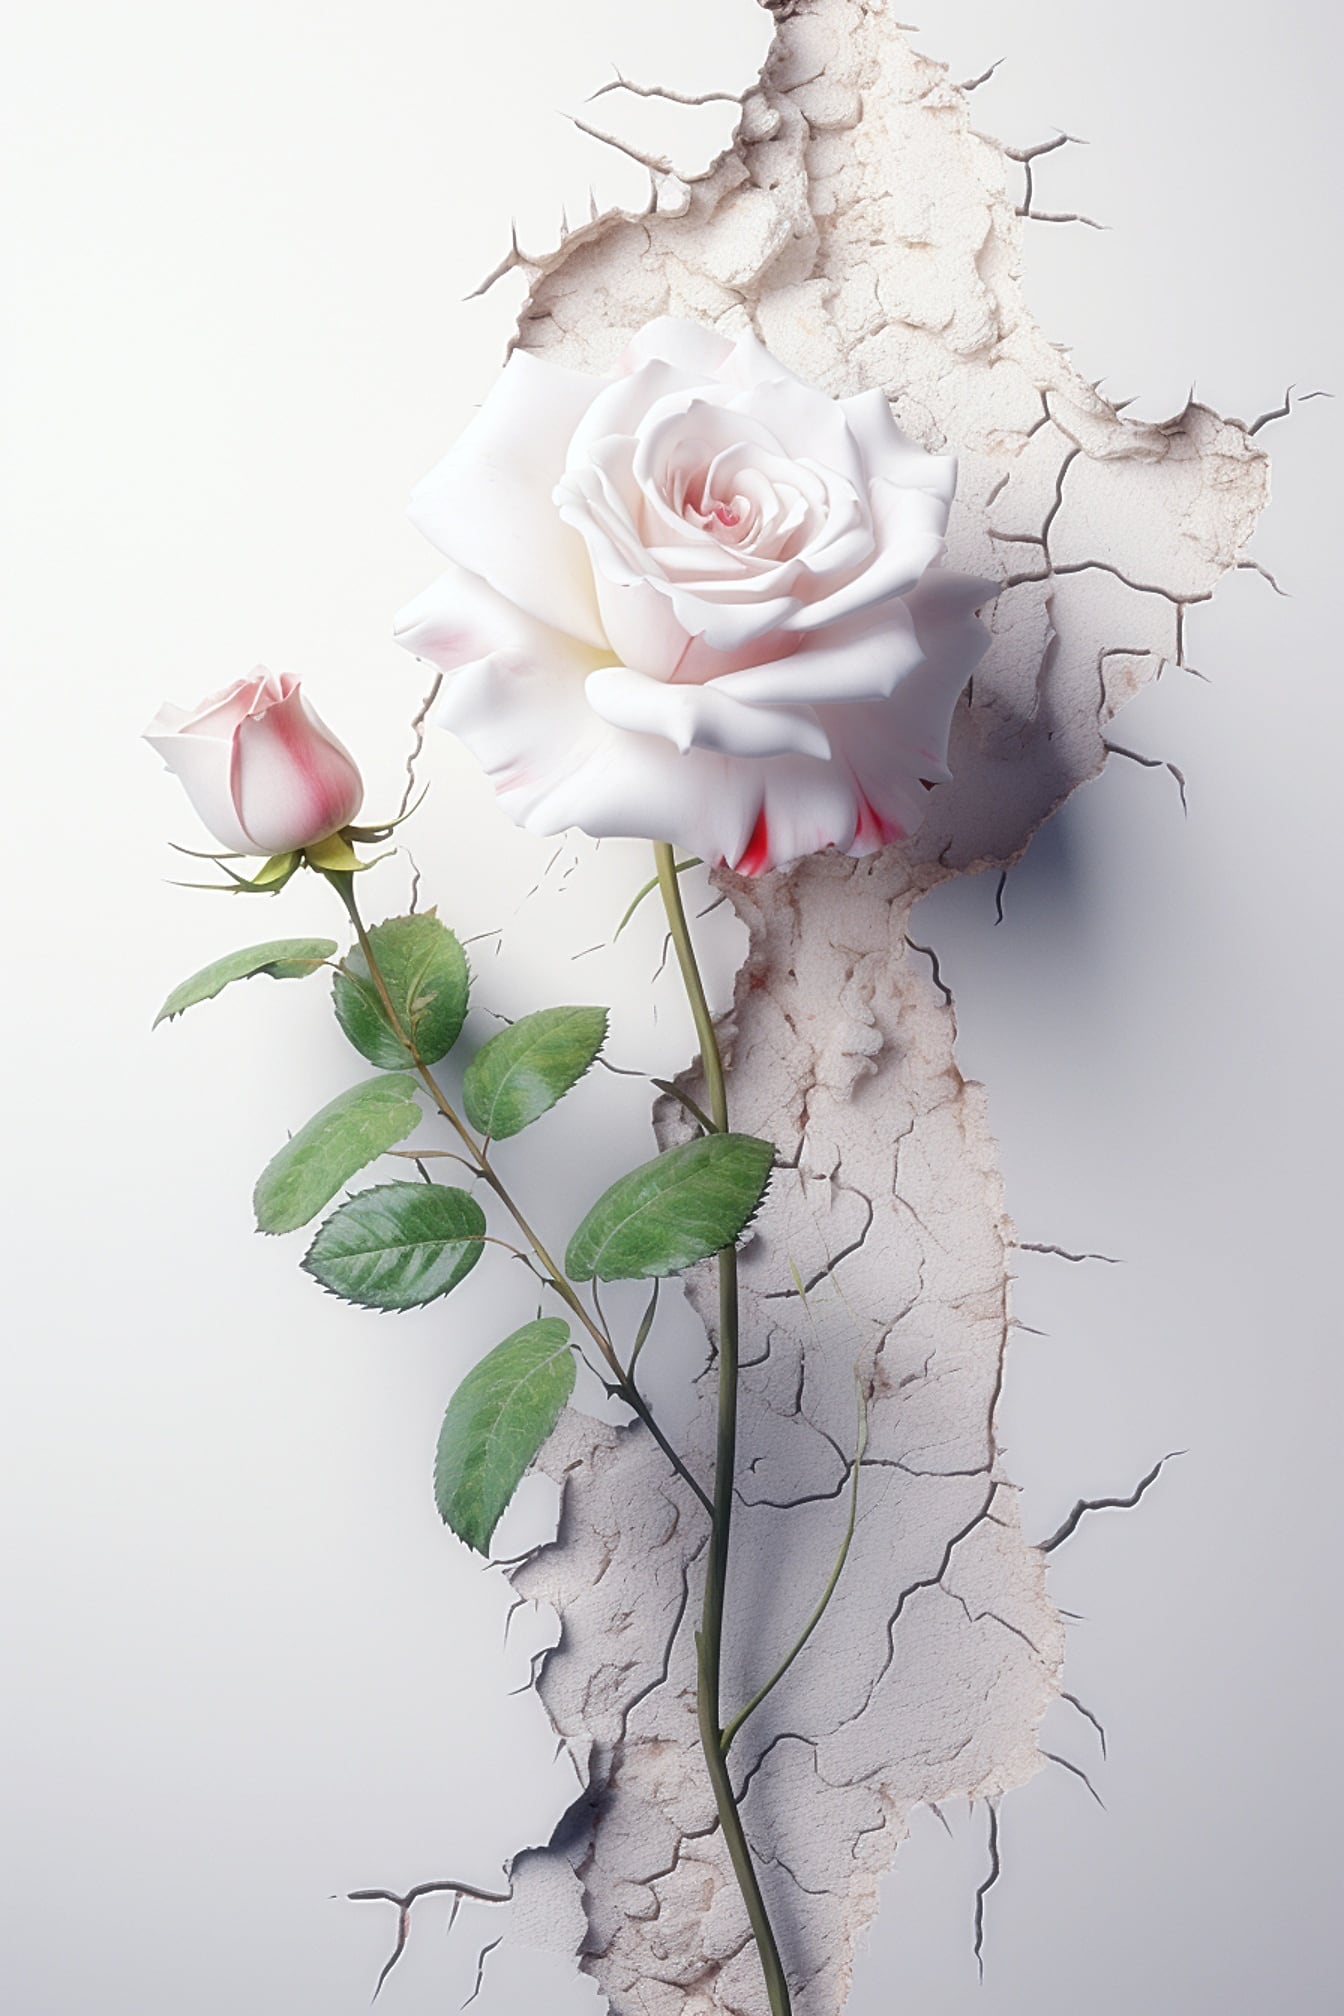 Valkoinen ruusu vihreillä lehdillä ja vaaleanpunainen ruusu halkeilevalla seinällä